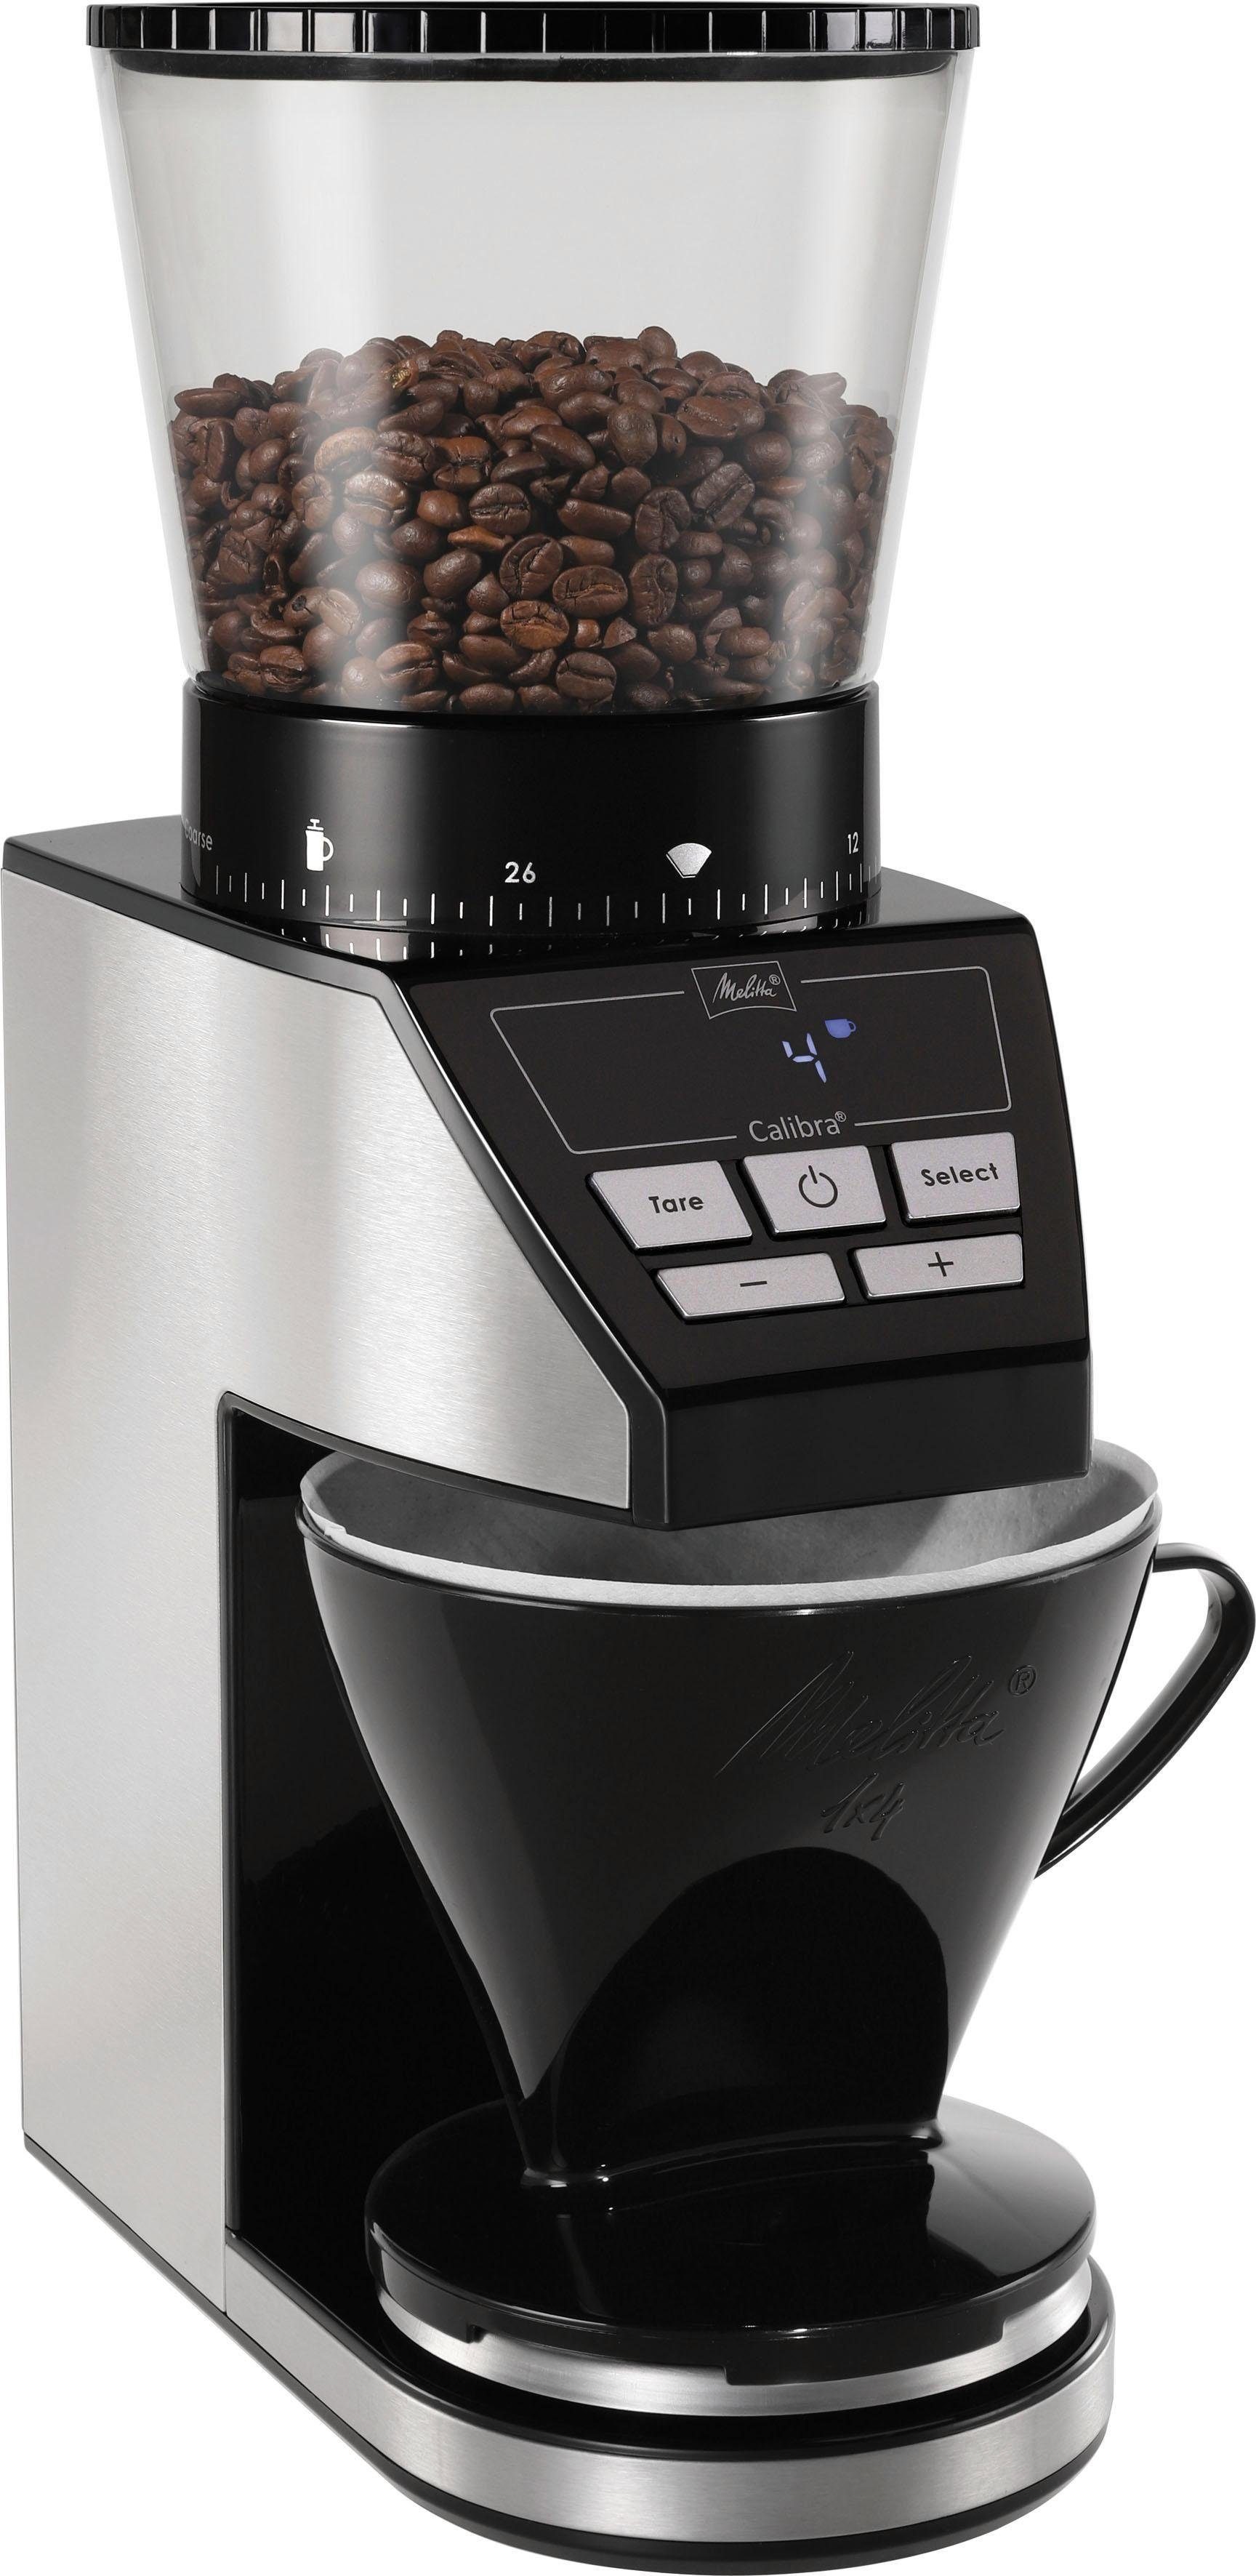 Kaffeemühle Calibra g schwarz-Edelstahl, 160 Bohnenbehälter 375 W, Melitta 1027-01 Kegelmahlwerk,